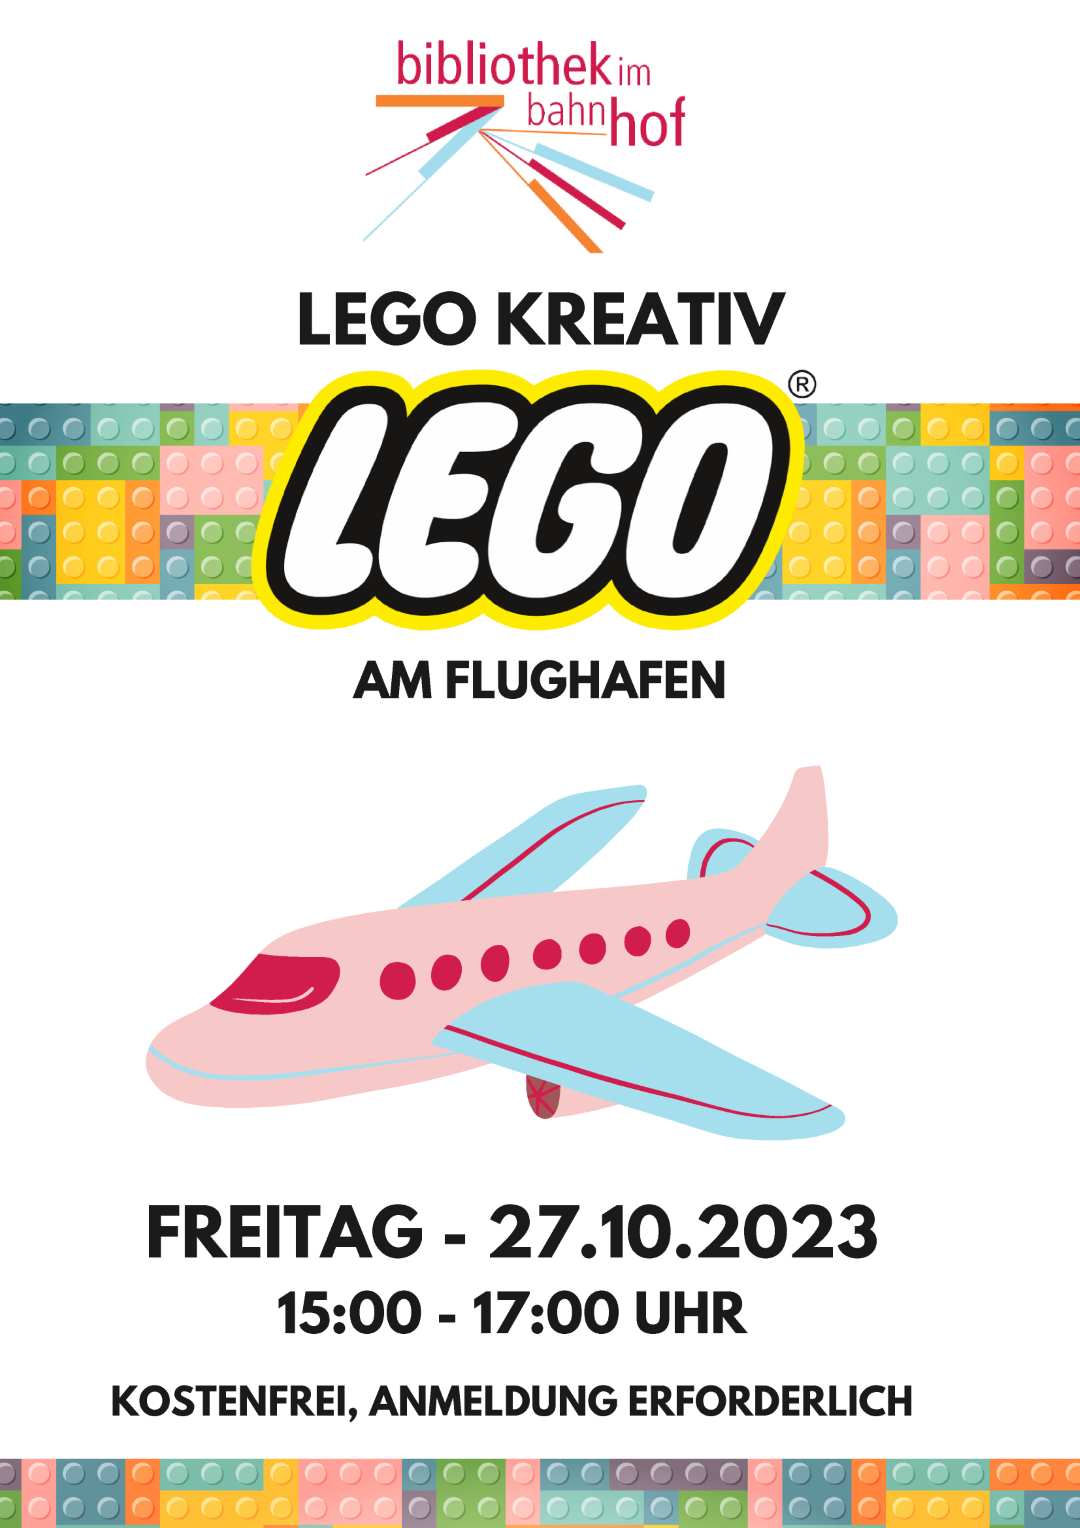 LEGO am Flughafen 1 of 1